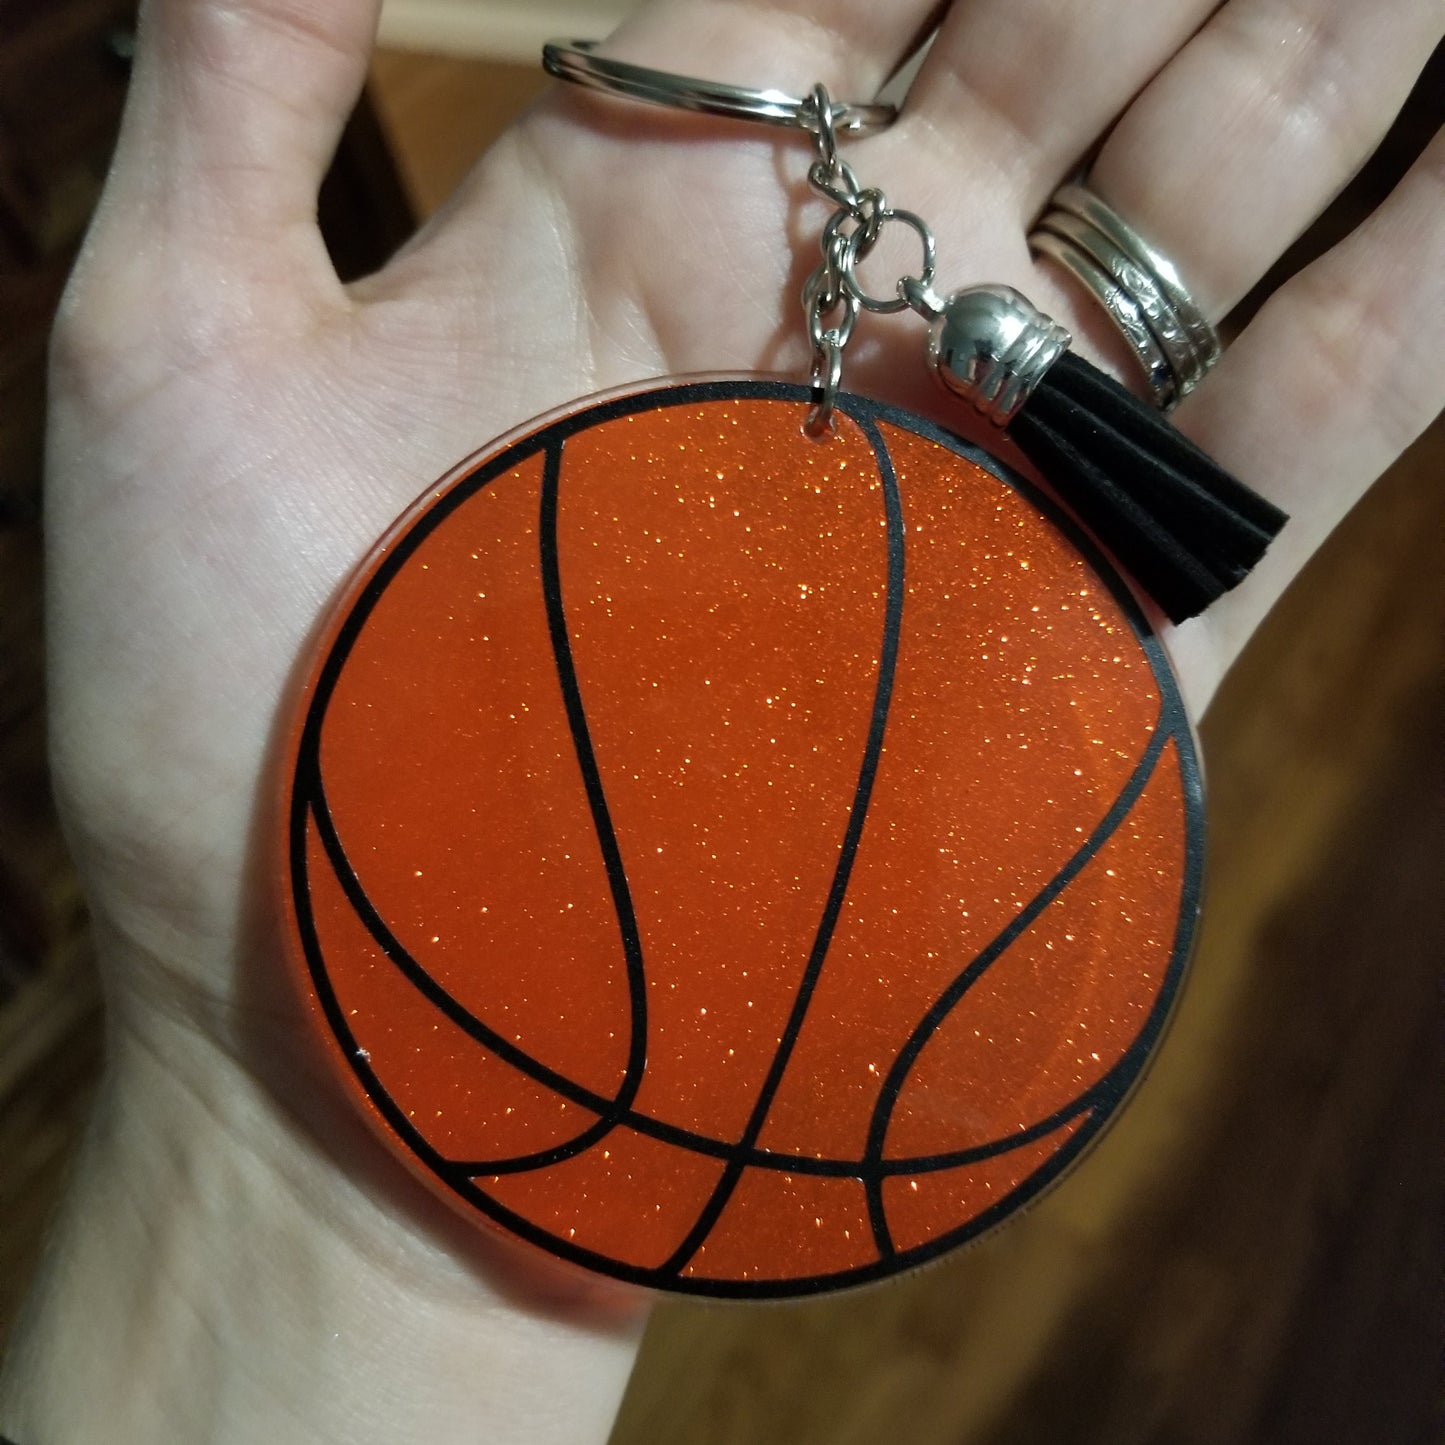 Bulk Orange Basketball 